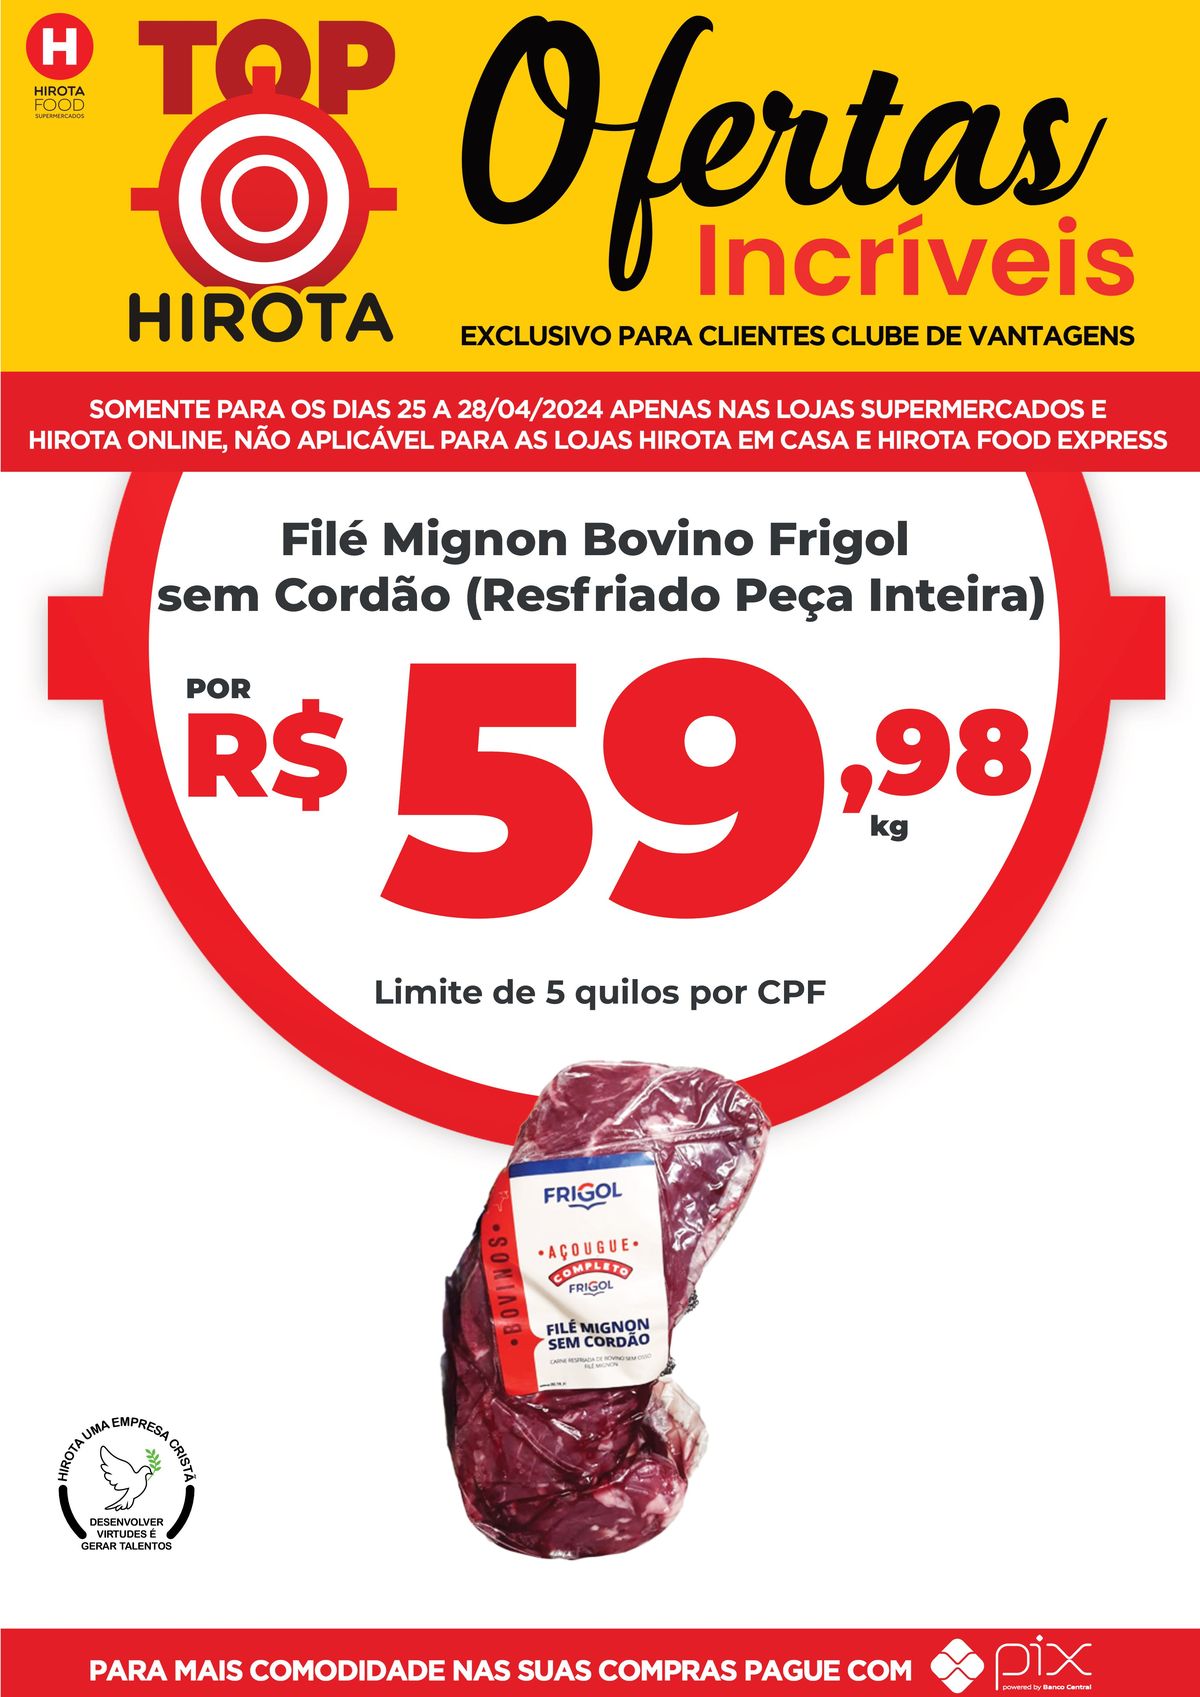 Filé Mignon Bovino Frigol sem Cordão (Resfriado Peça Inteira) por um ótimo preço!